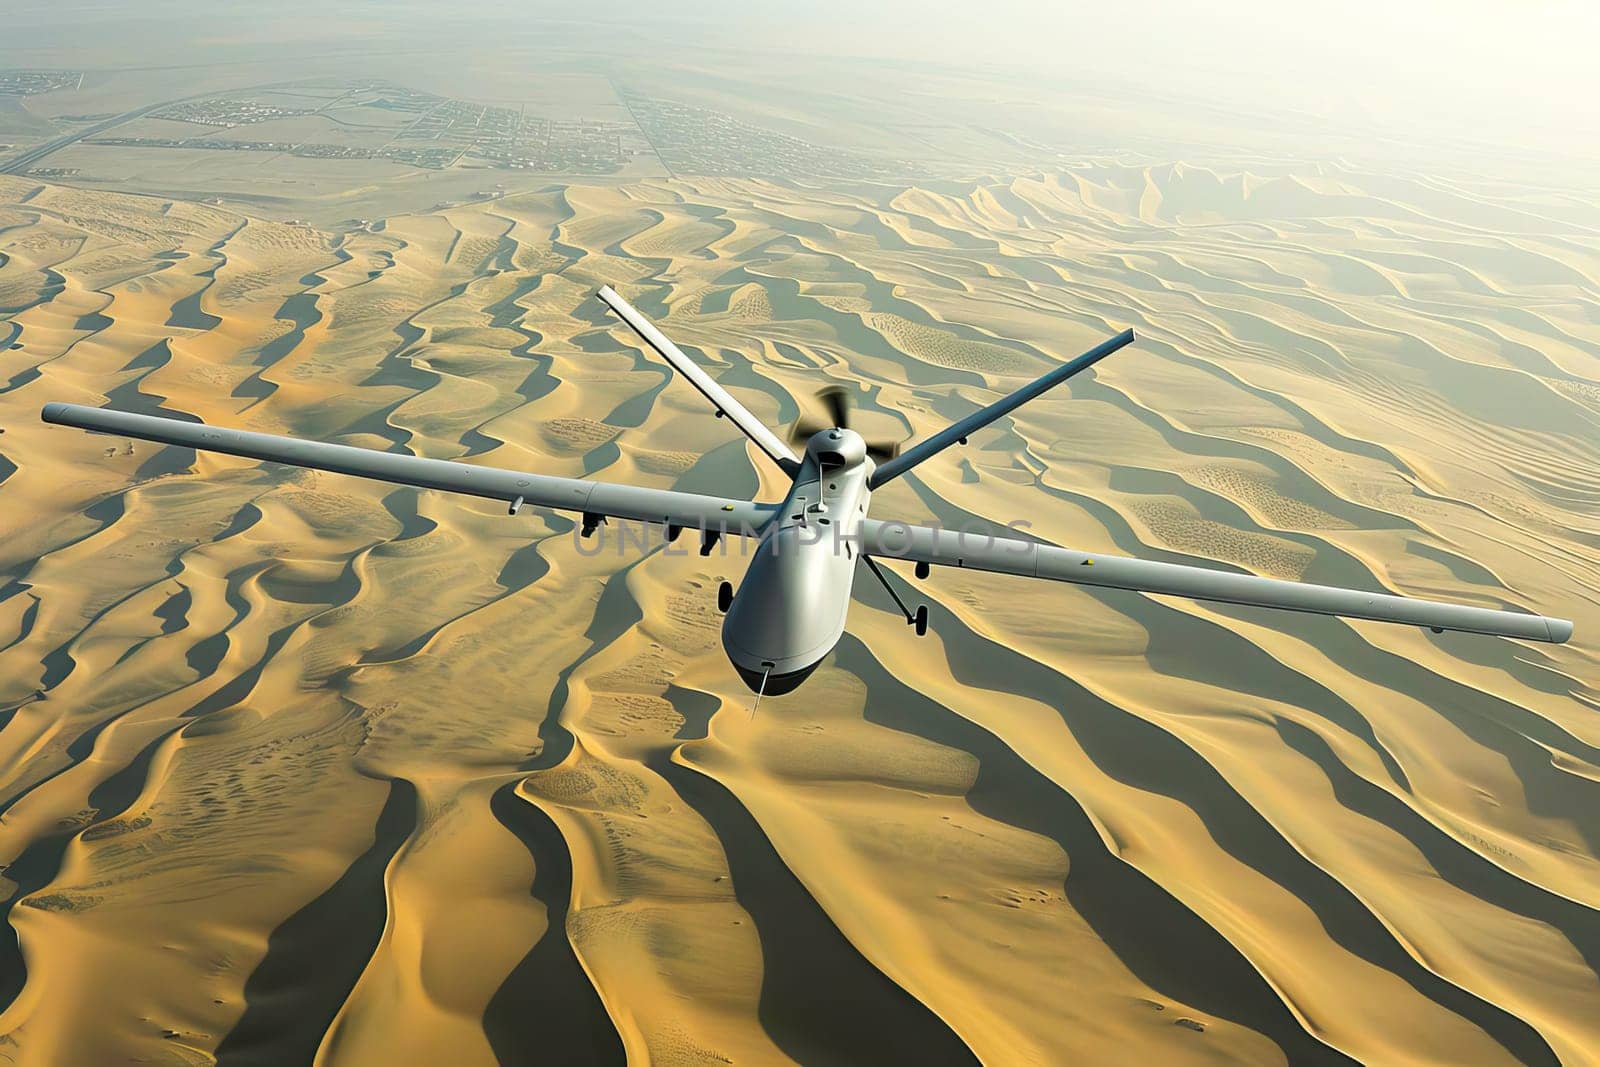 A military plane flies over a barren desert landscape.